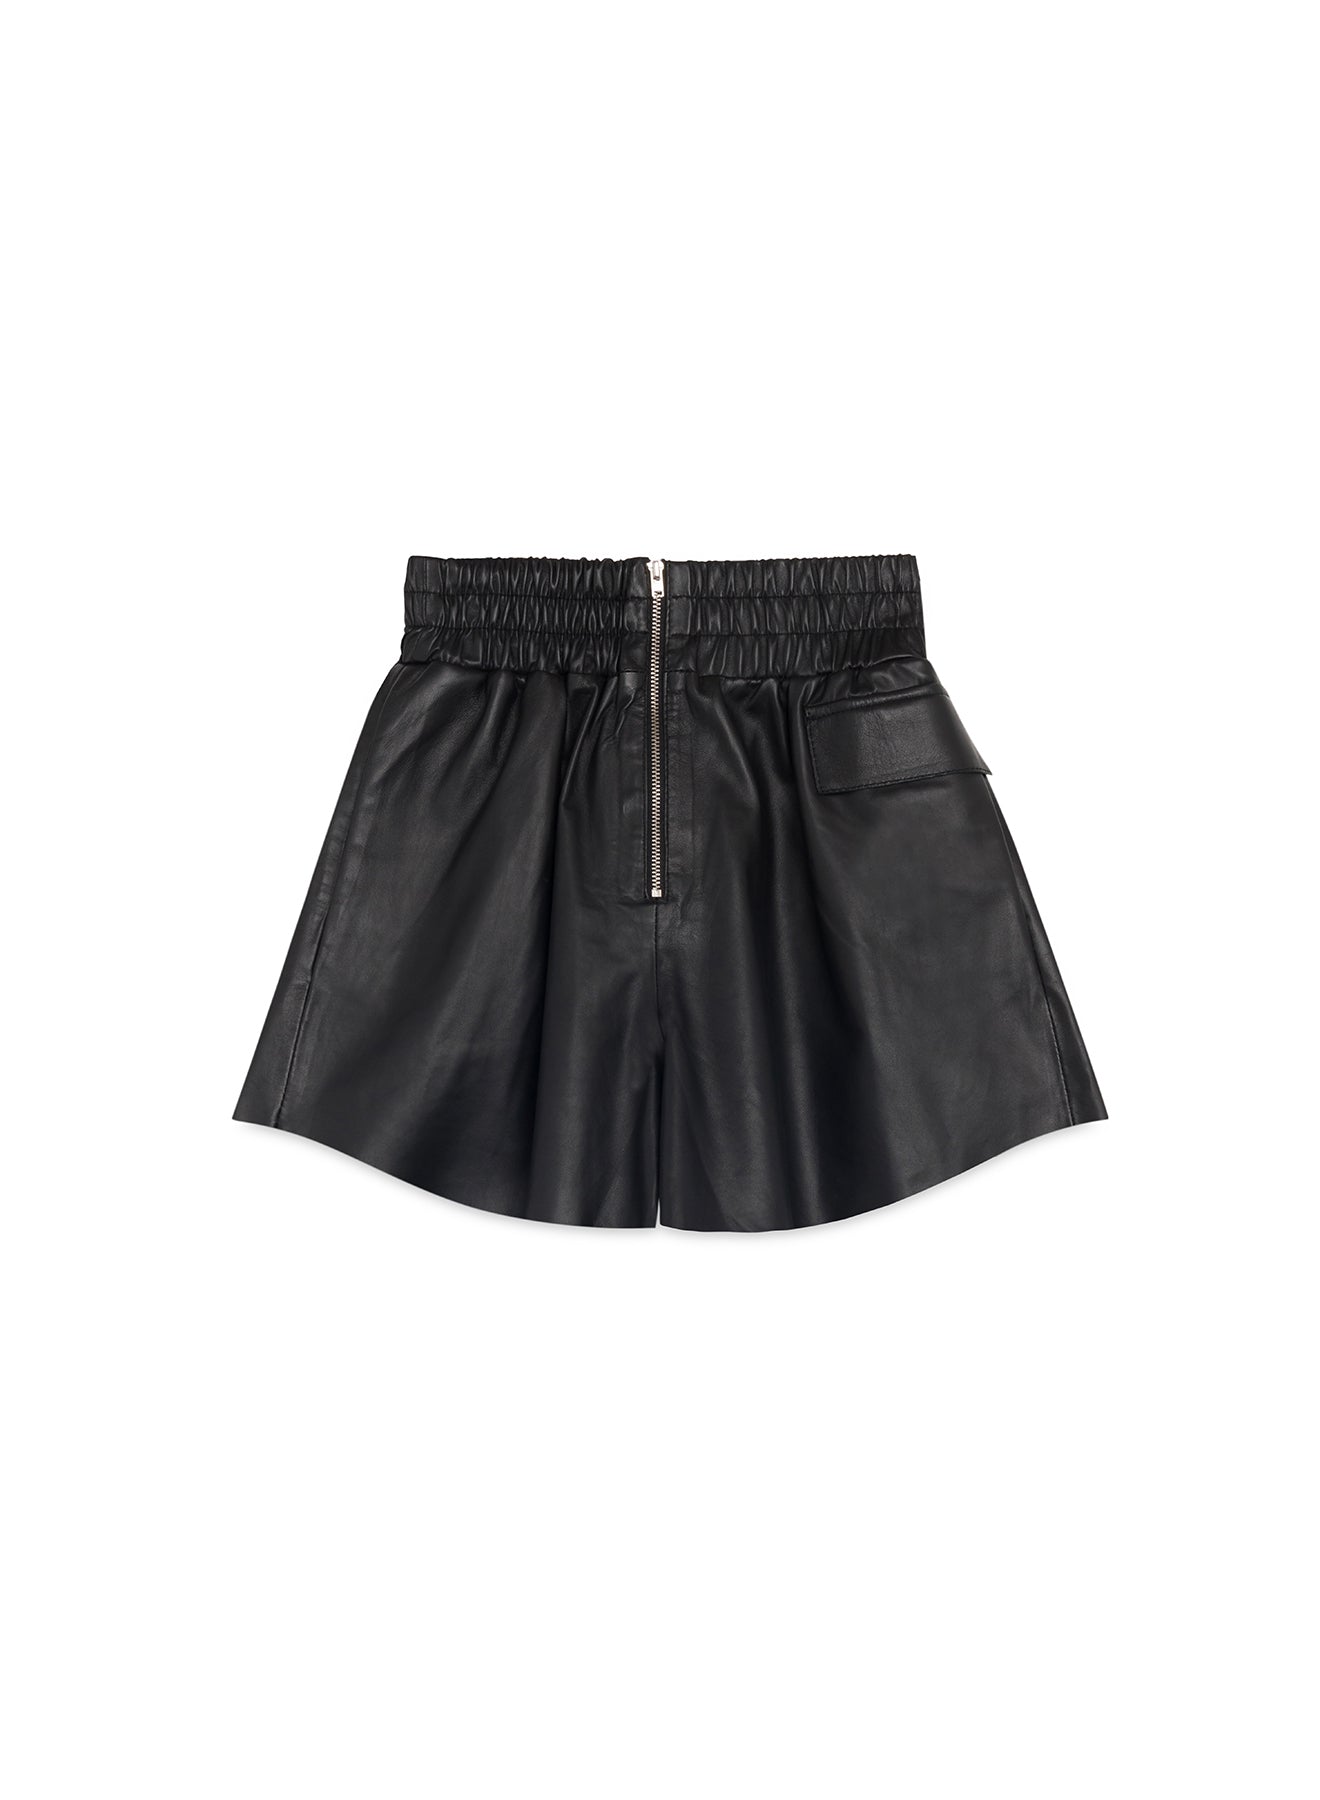 Black Leather shorts